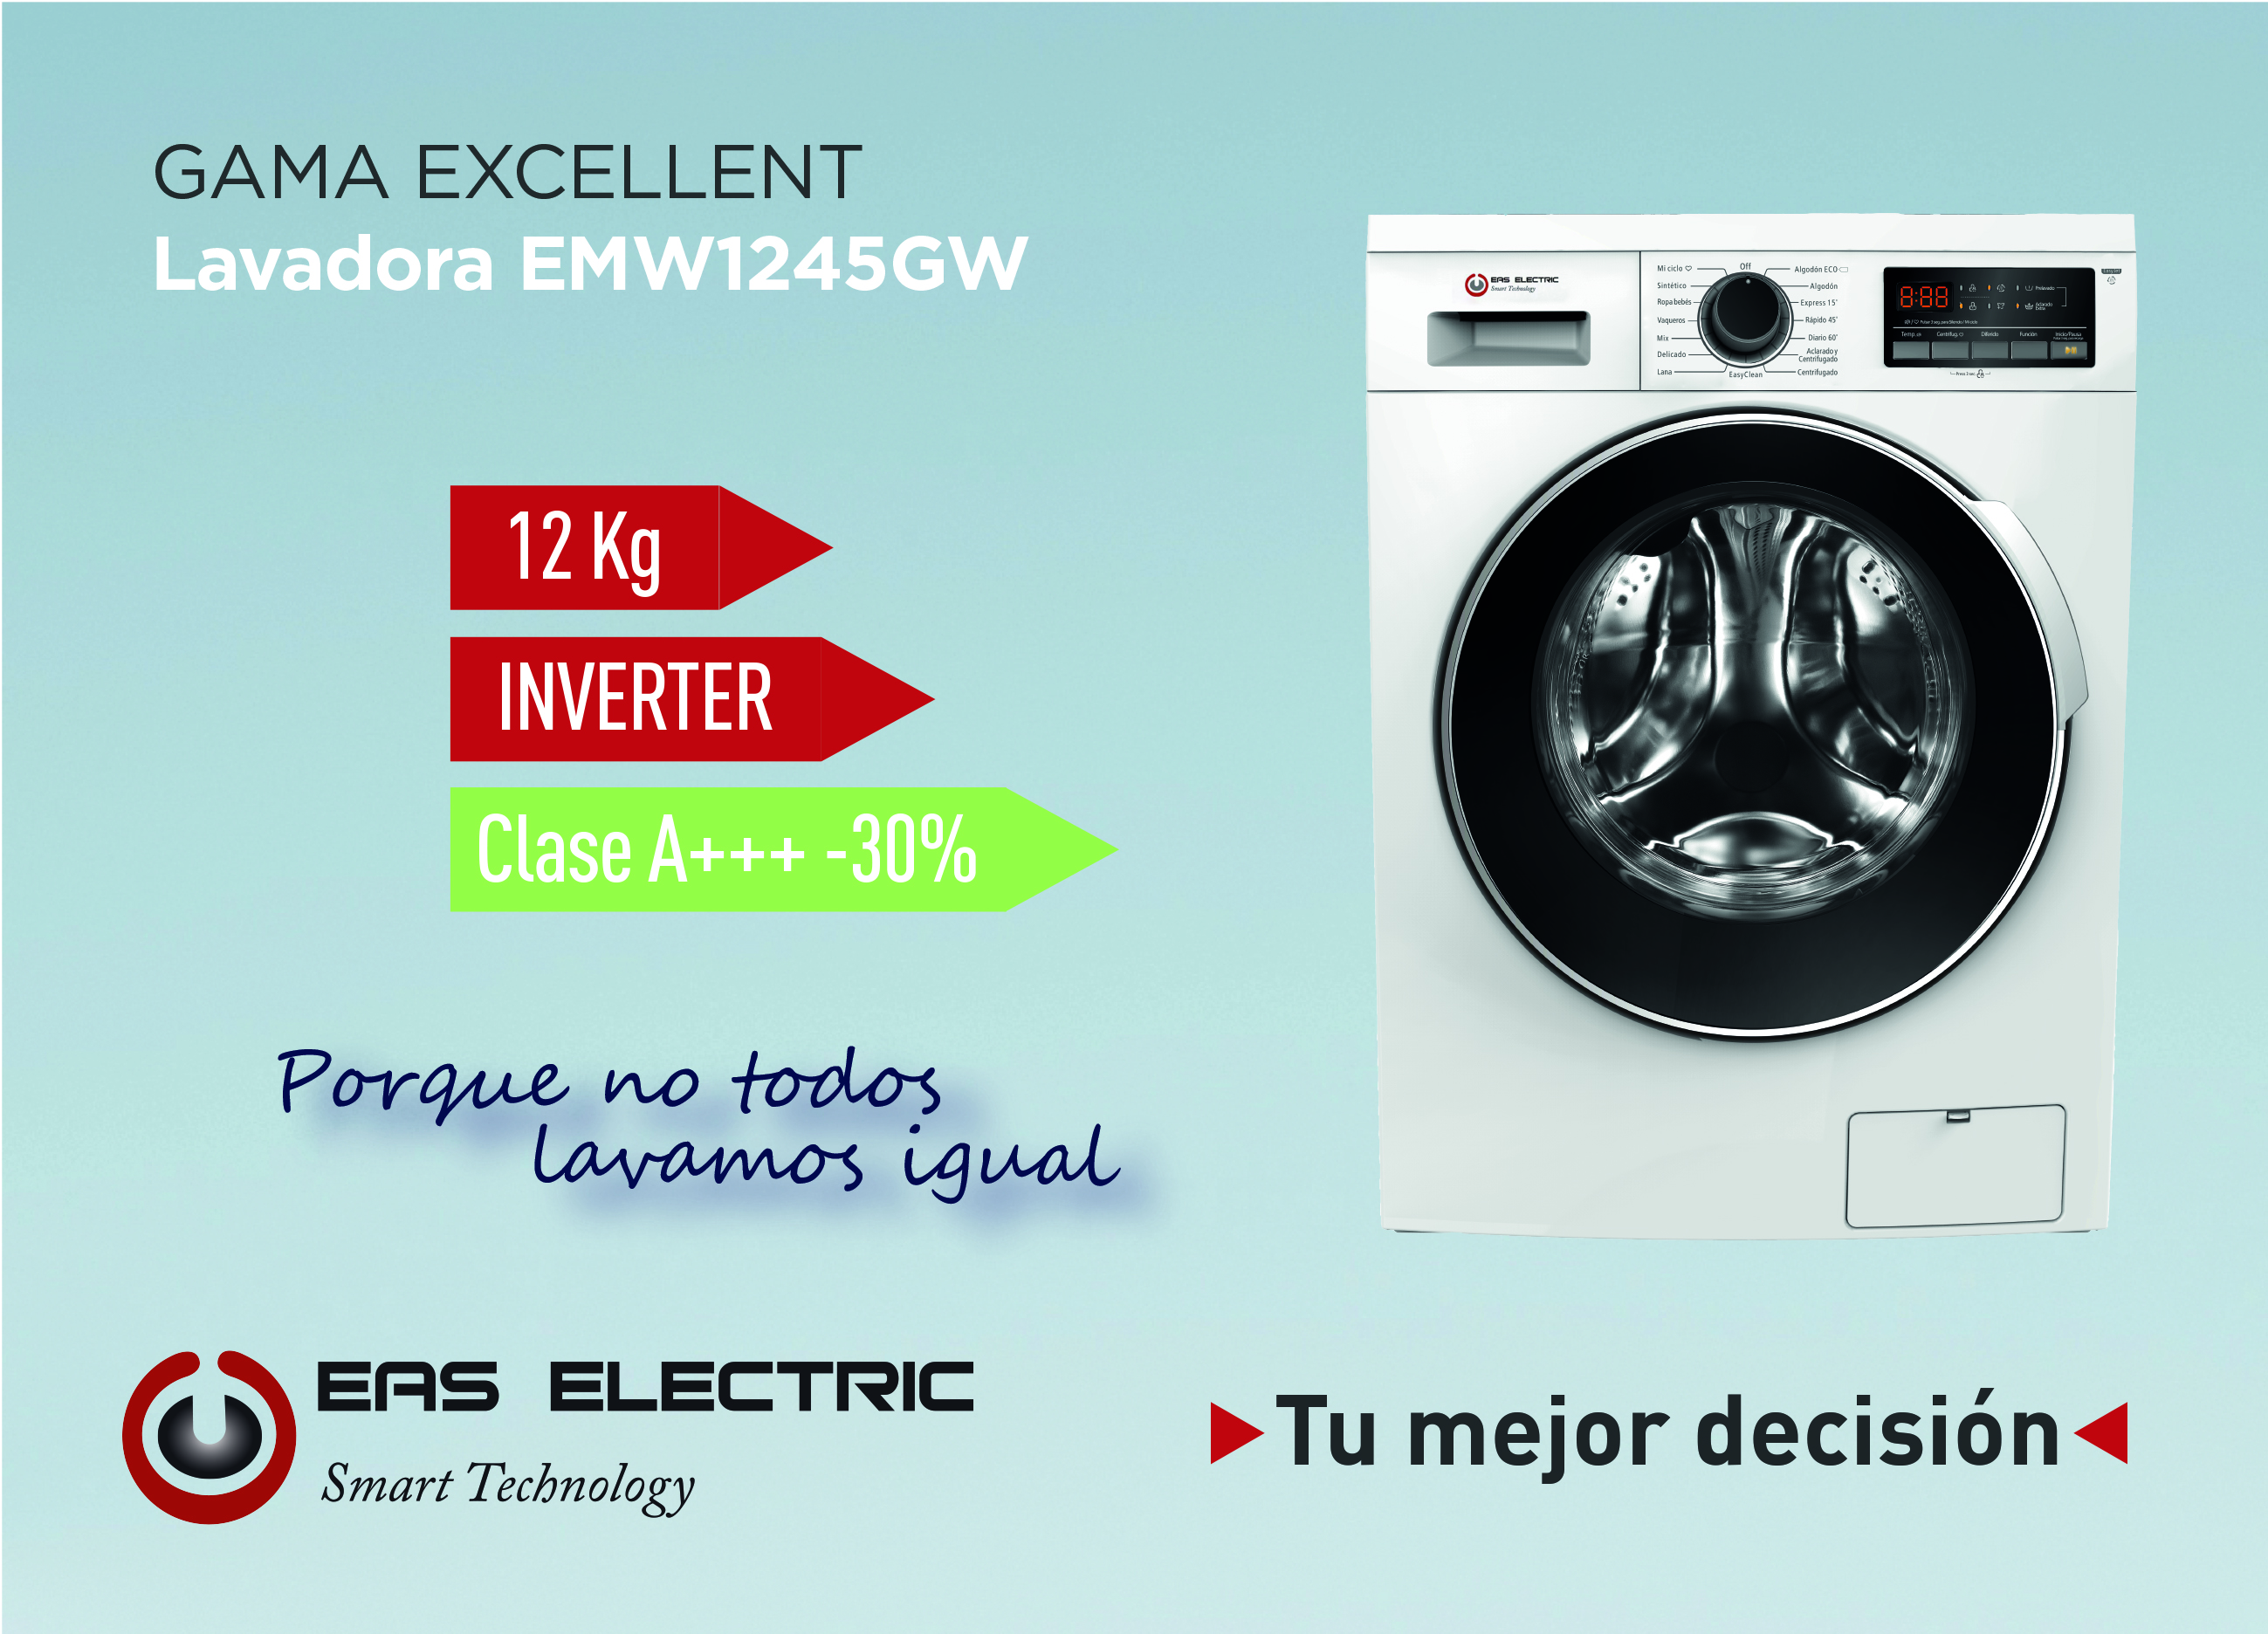 Mejores marcas de lavadoras - Mi Electro News